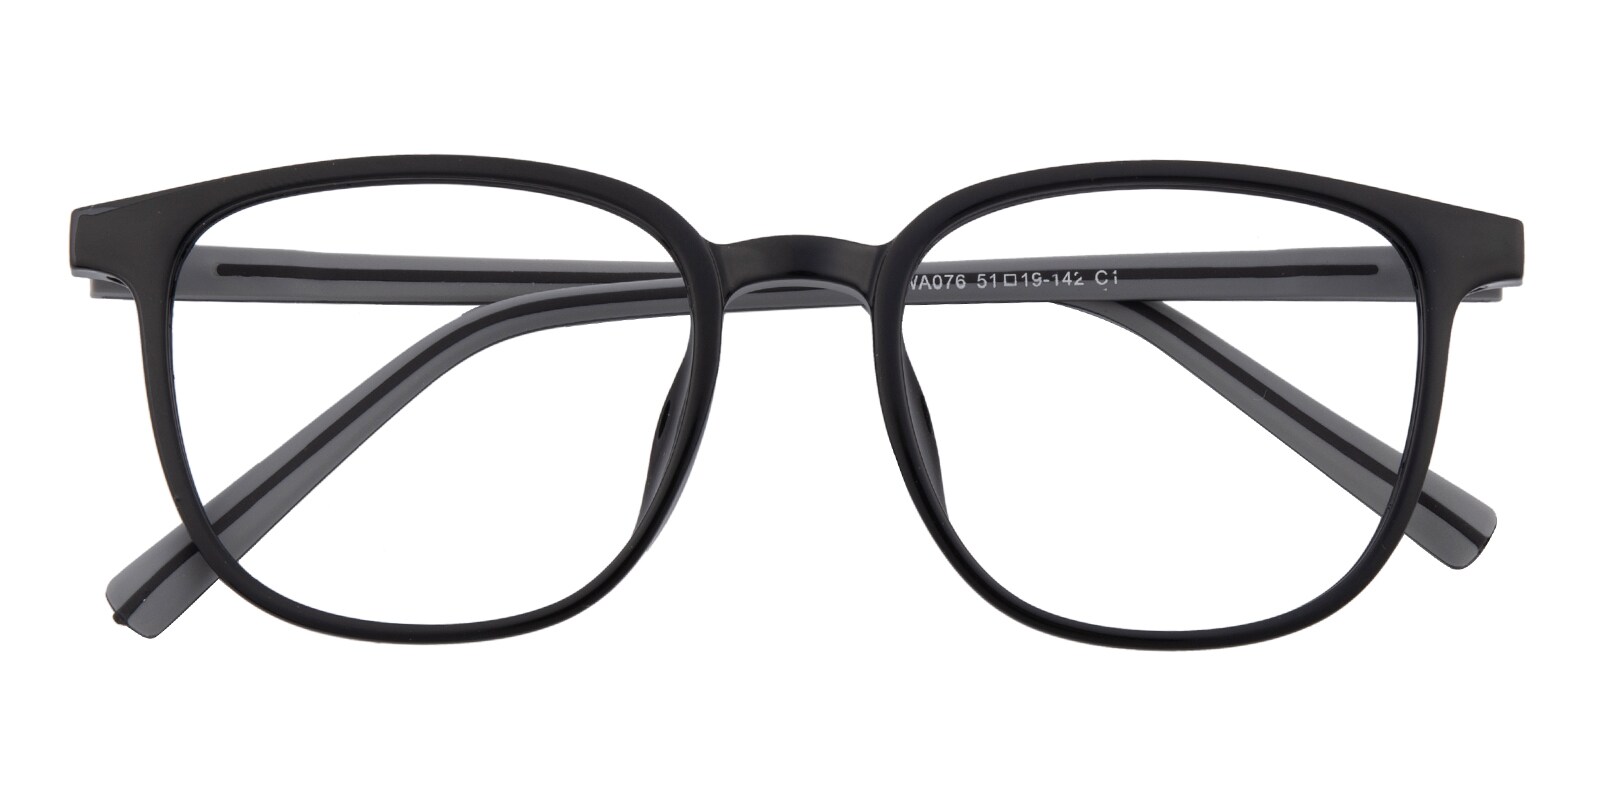 Oval Eyeglasses, Full Frame Black/Gray TR90|Silica-gel - FP2653